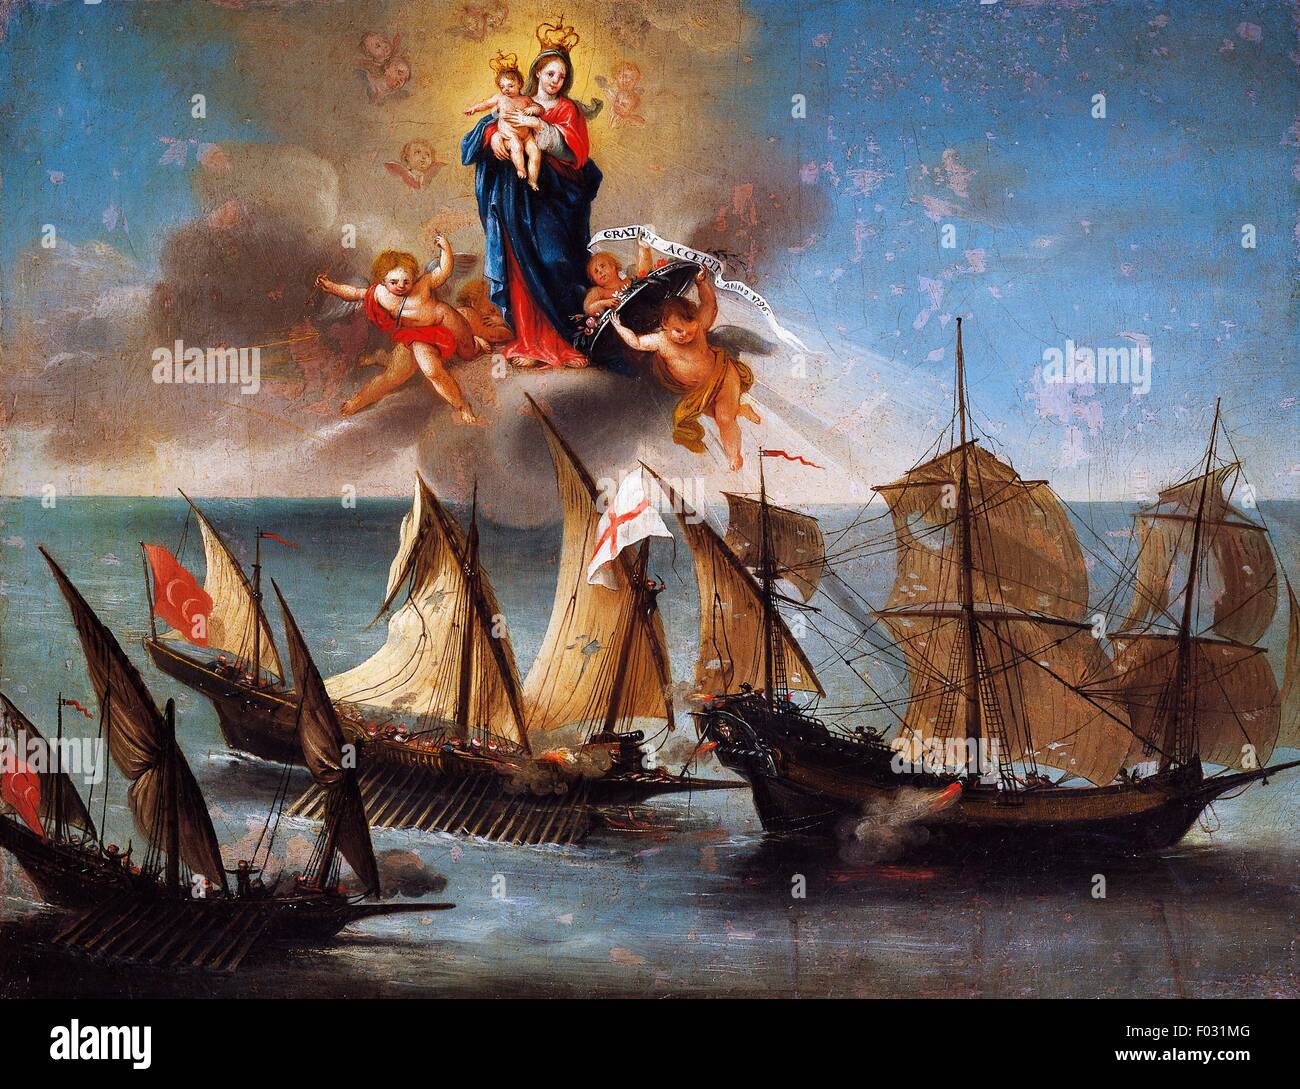 Polish-mâts Genovese bateaux Rose suivie de deux Barbary xebecs, ex-voto marins, l'Italie, 18e siècle, huile sur toile, artiste inconnu, 1796. Banque D'Images